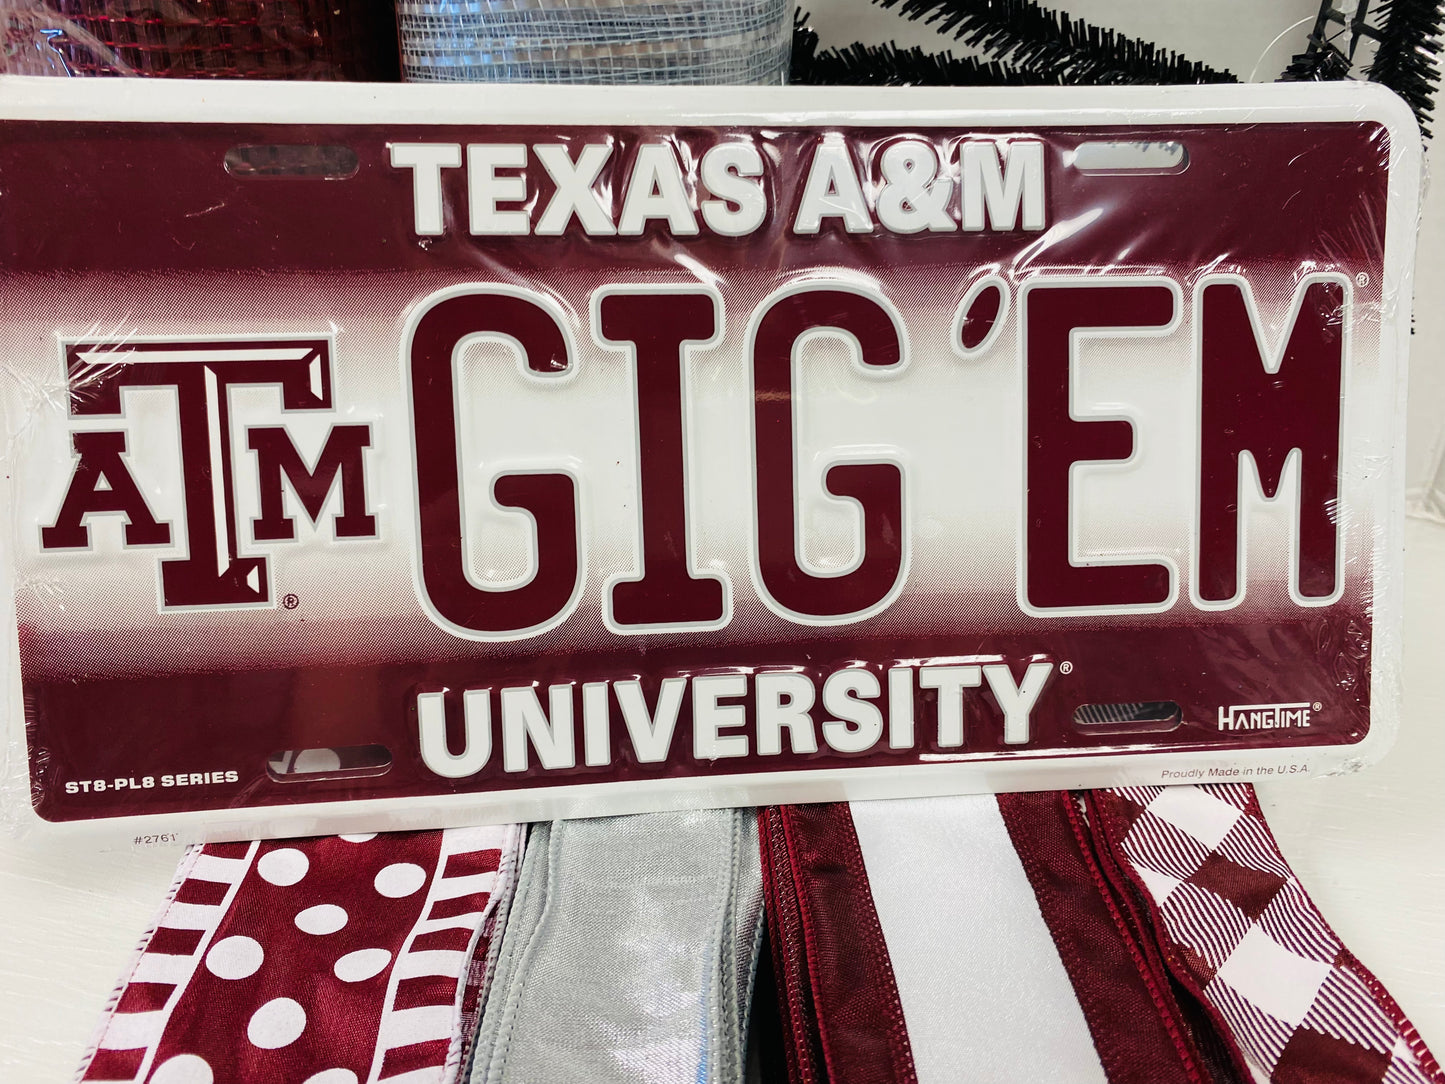 TX Aggie Wreath Party - Gig 'Em Sign